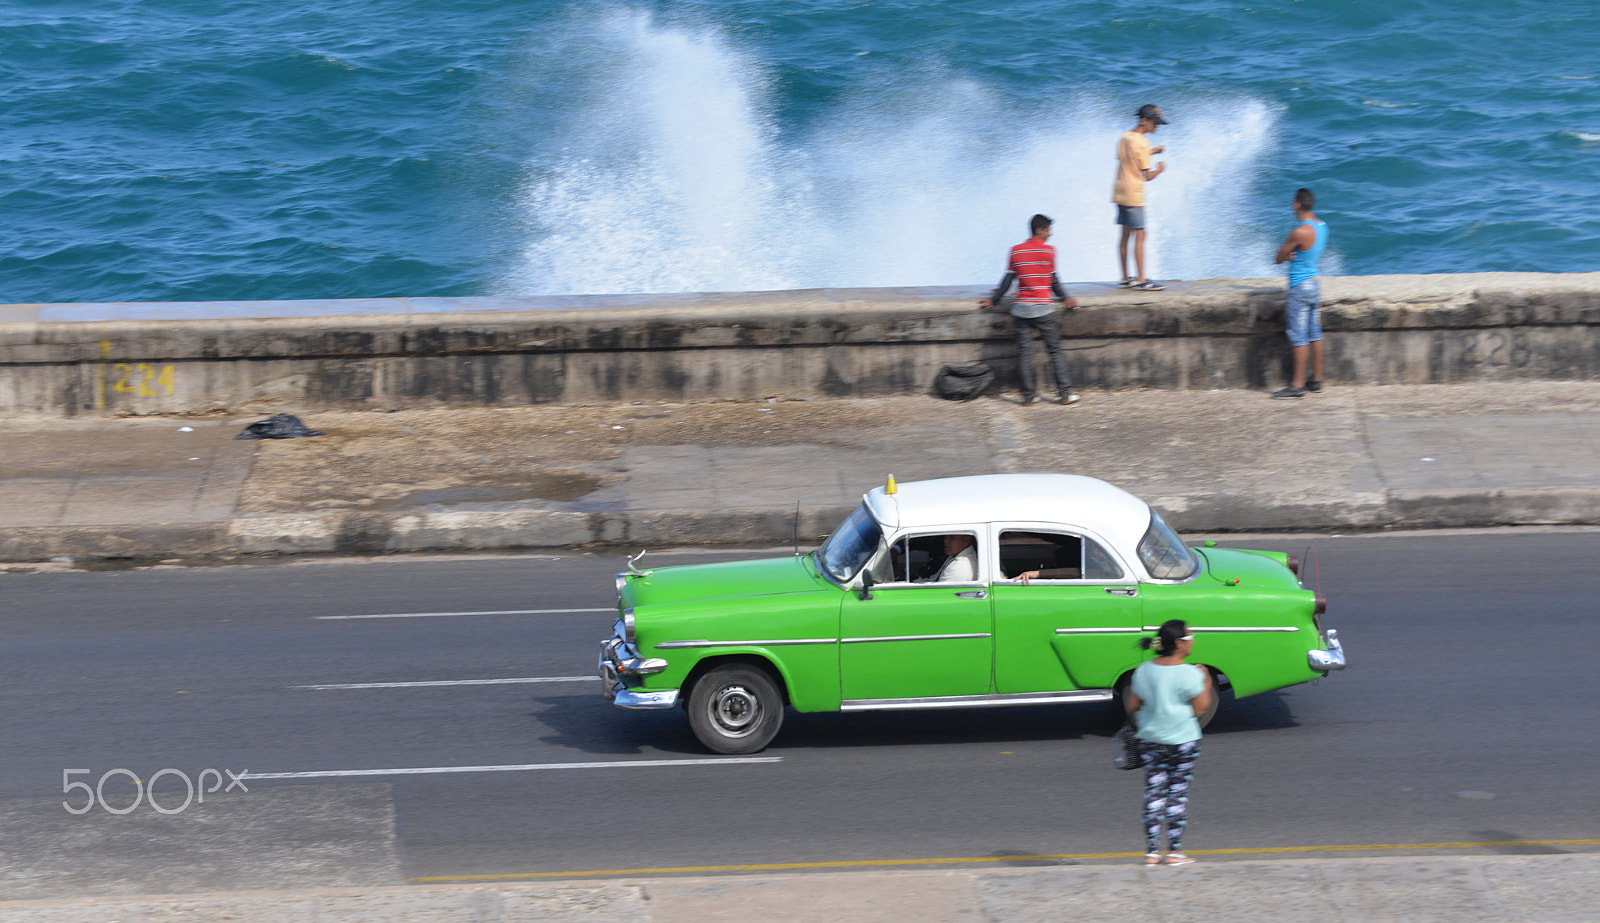 AF Zoom-Micro Nikkor 70-180mm f/4.5-5.6D ED sample photo. Havana november 2016 photography